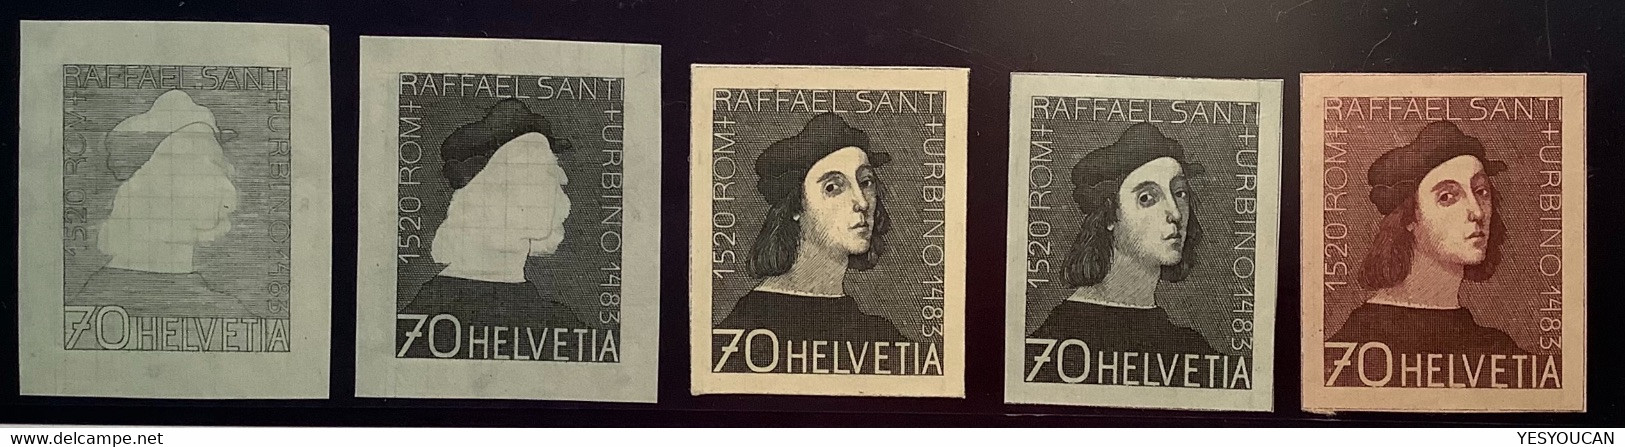 Schweiz1946 BICKEL ESSAY "RAFFAEL SANTI"1483-1520 Raphael Italian Renaissance Painter&architect(Art Vatican Architecture - Ungebraucht